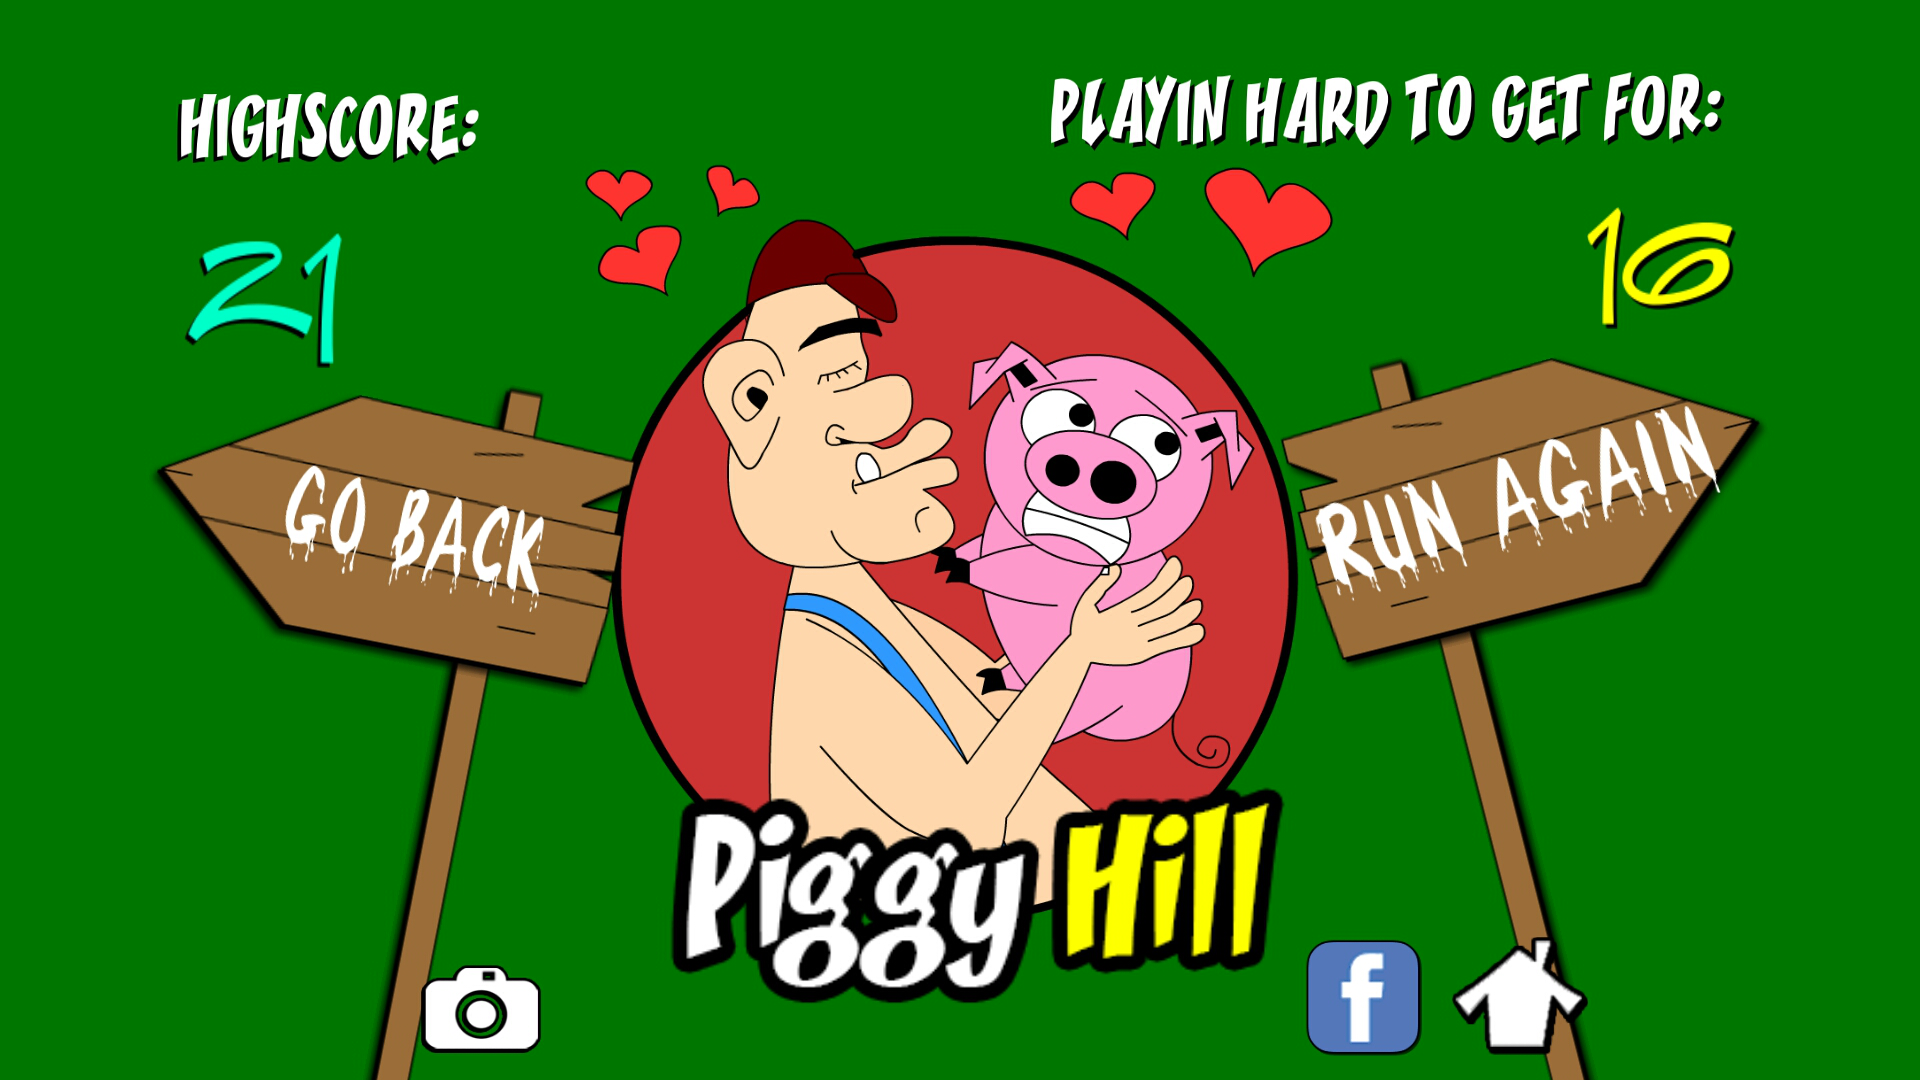 Piggy Hill!